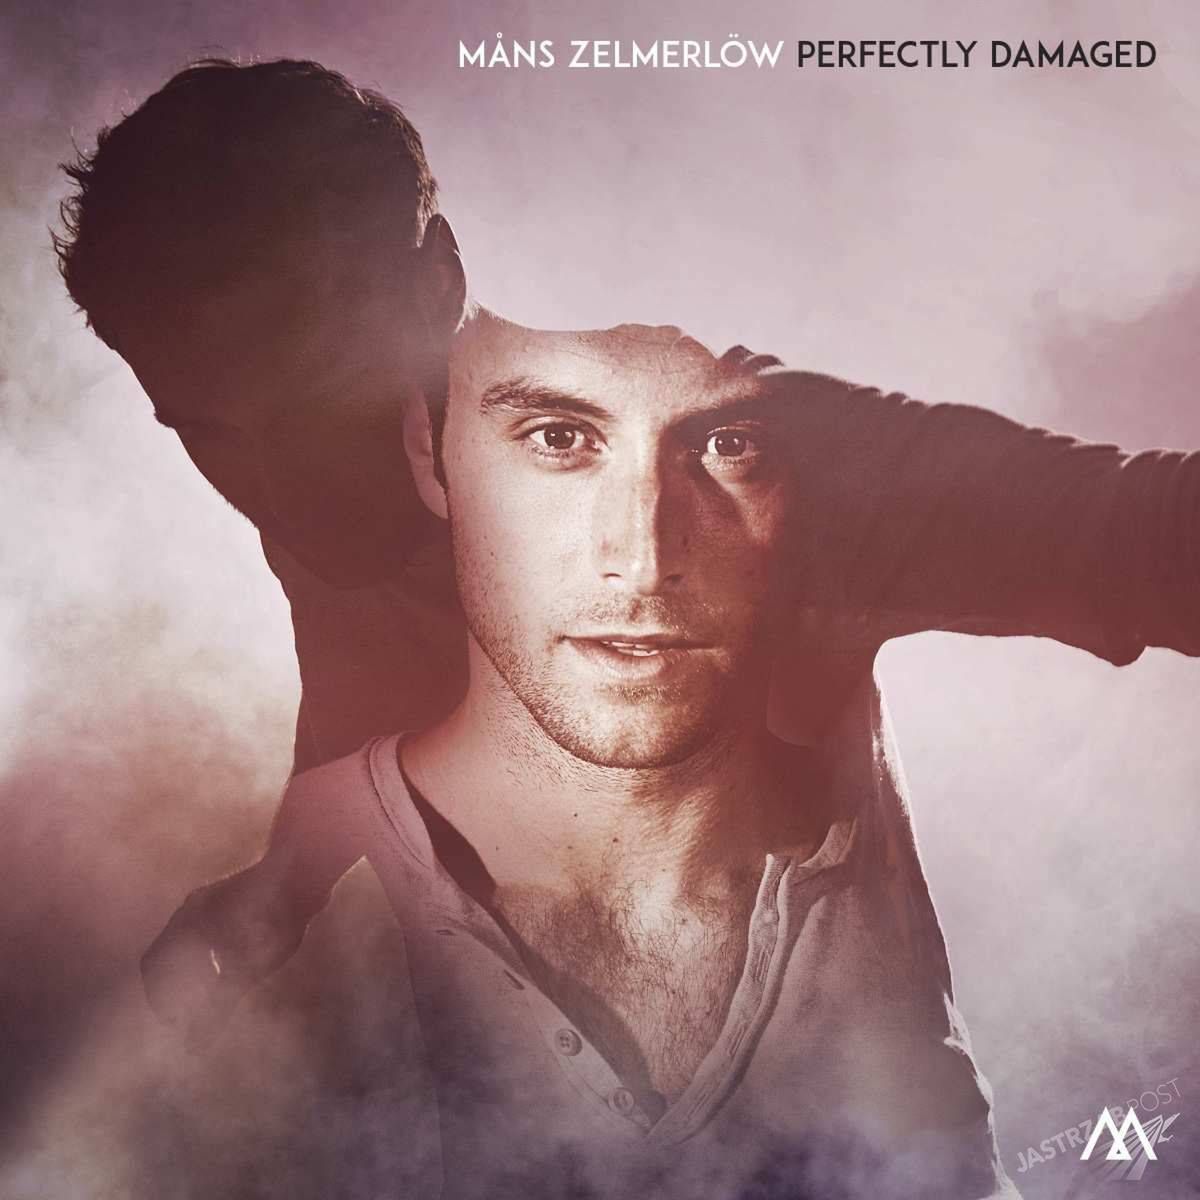 Płyta Mansa Zelmerlow Perfectly Damaged jest dostępna w Polsce. Cena w Empiku to 52,99 złotych